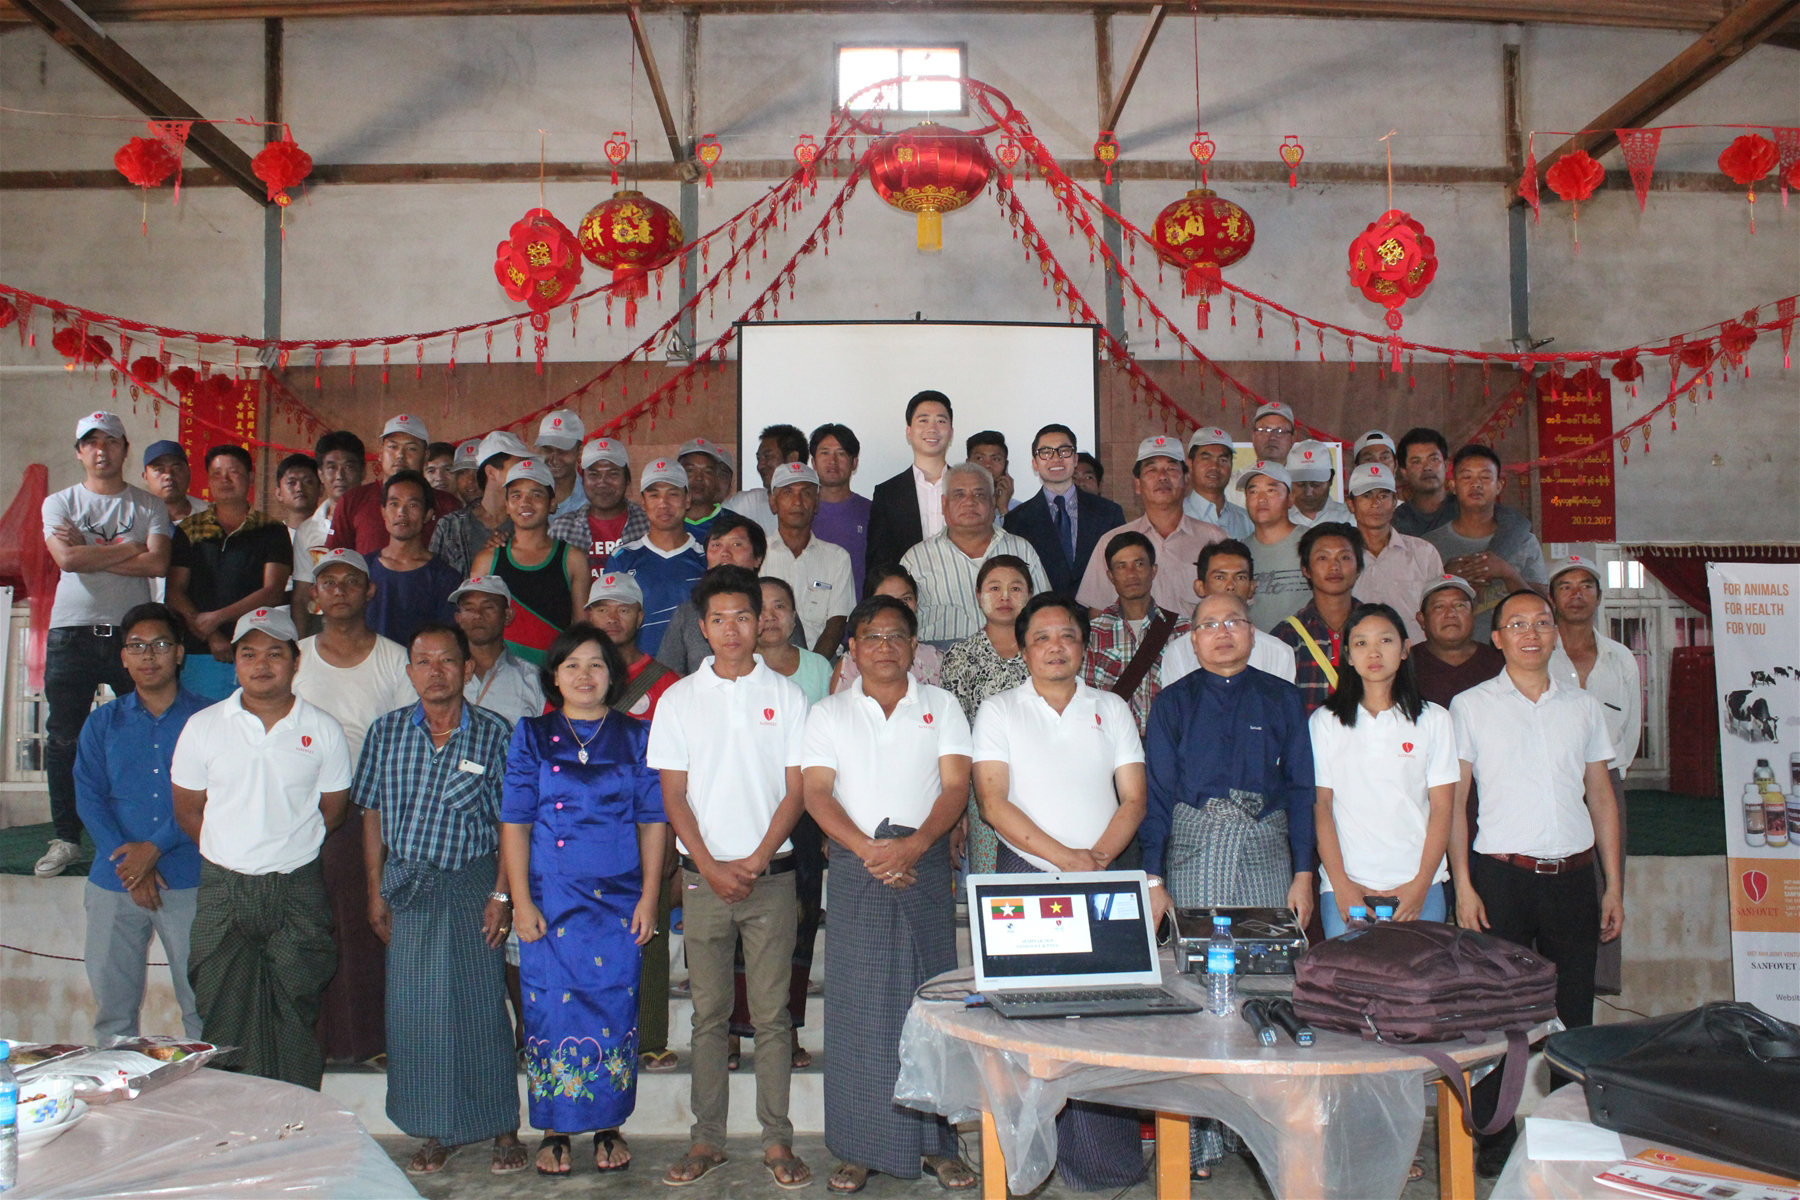 Thương hiệu Sanfovet tổ chức hội thảo tại 3 thành phố ở Myanmar 2019 (04/05 – 10/05)